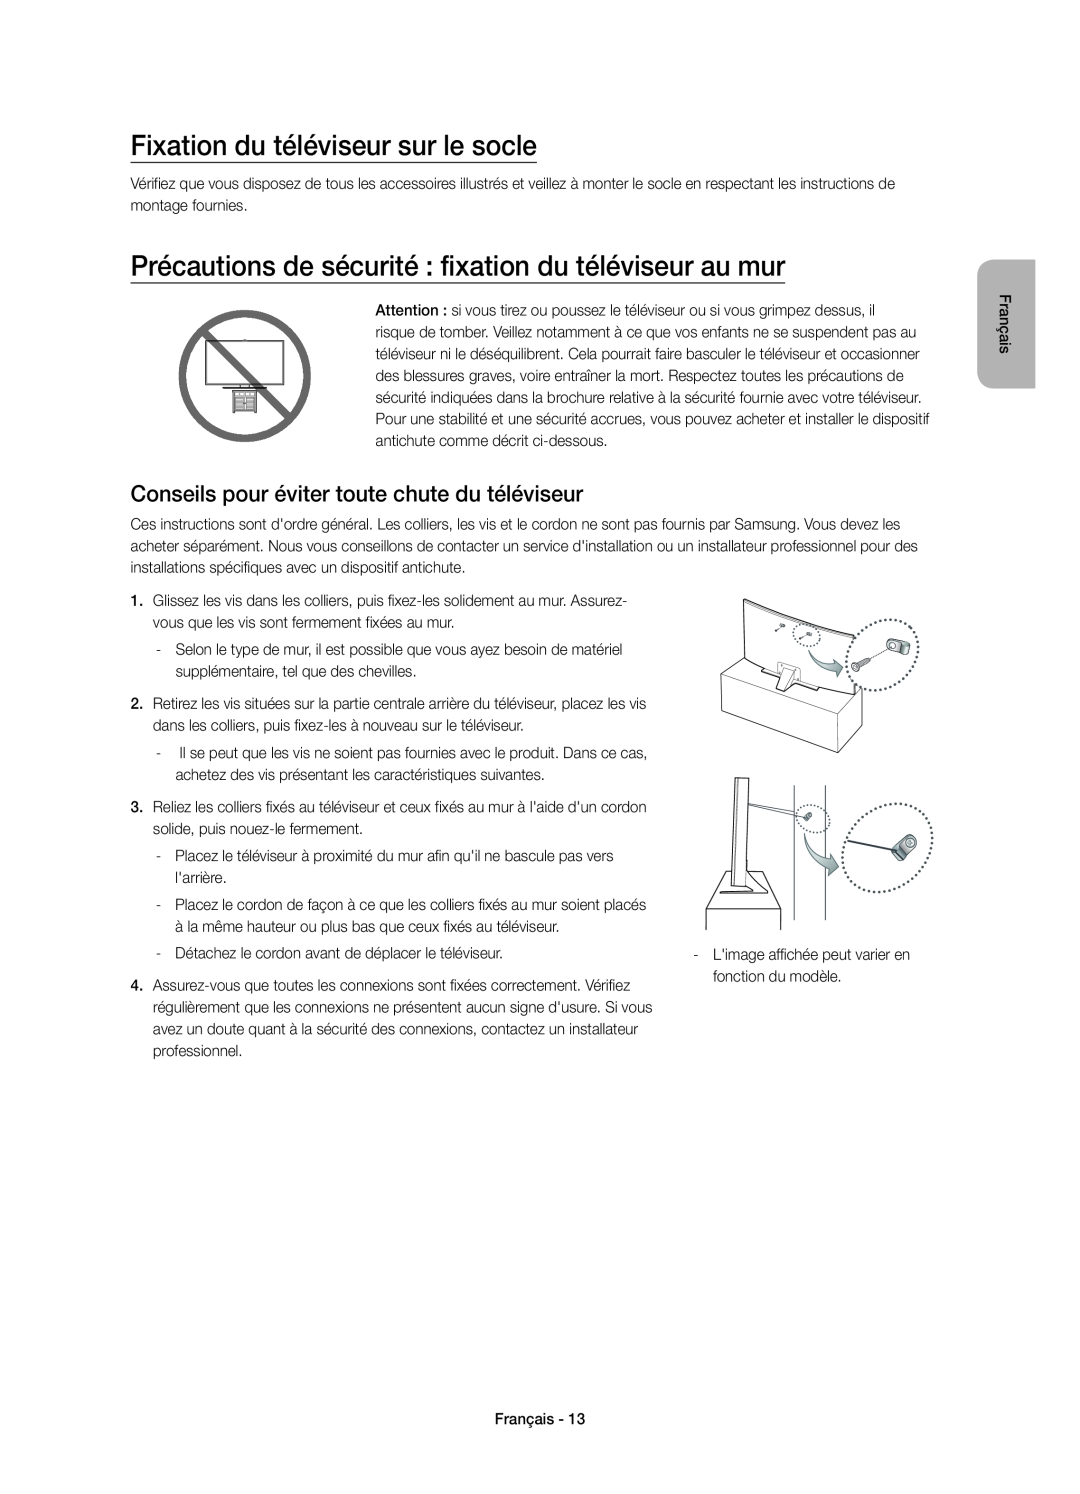 Samsung UE55JU6770UXXN manual Fixation du téléviseur sur le socle, Précautions de sécurité fixation du téléviseur au mur 